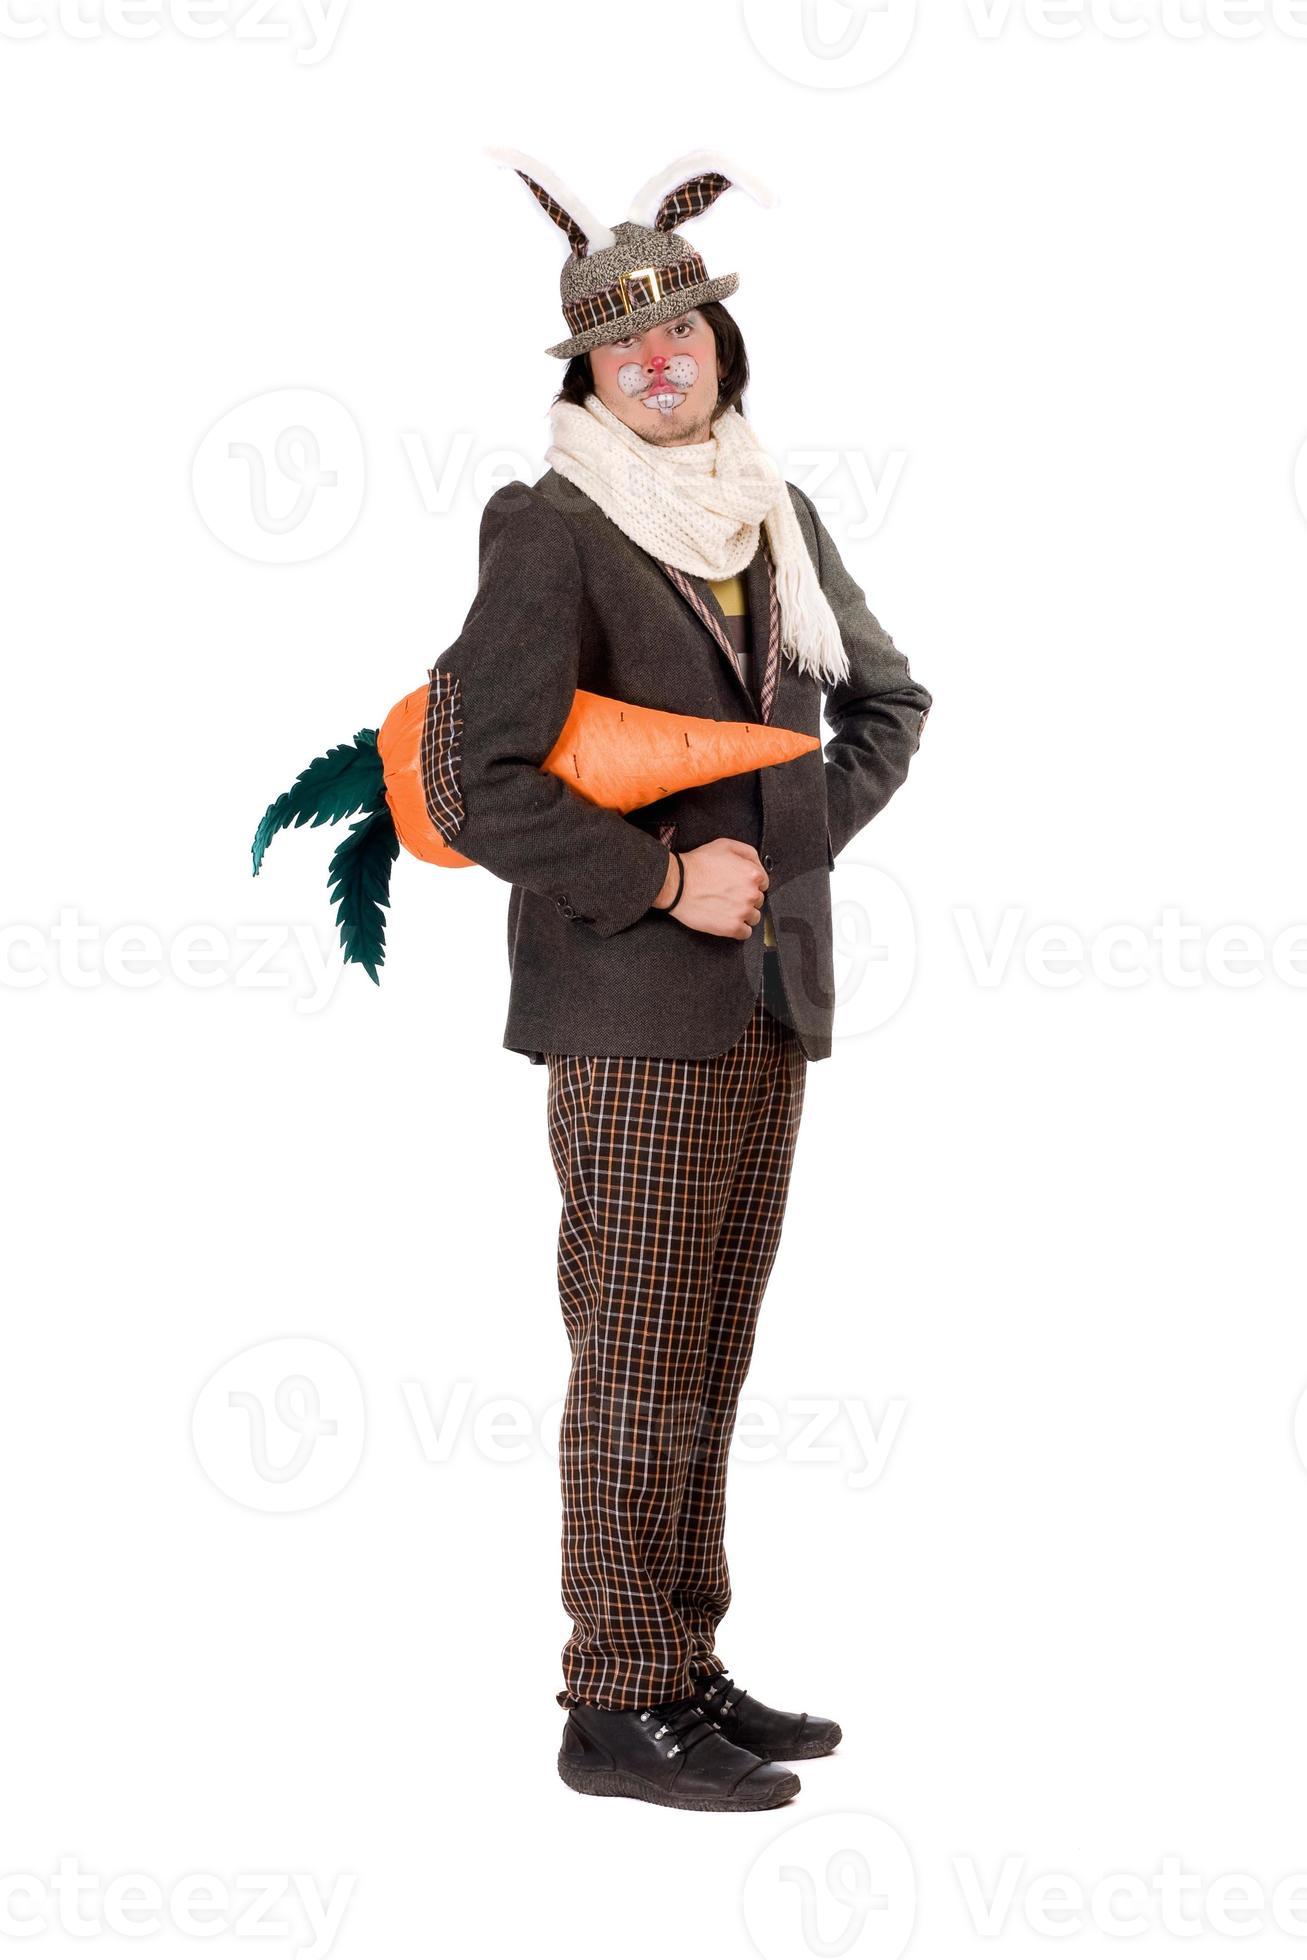 https://static.vecteezy.com/ti/photos-gratuite/p2/18940216-jeune-homme-en-costume-de-lapin-photo.jpg